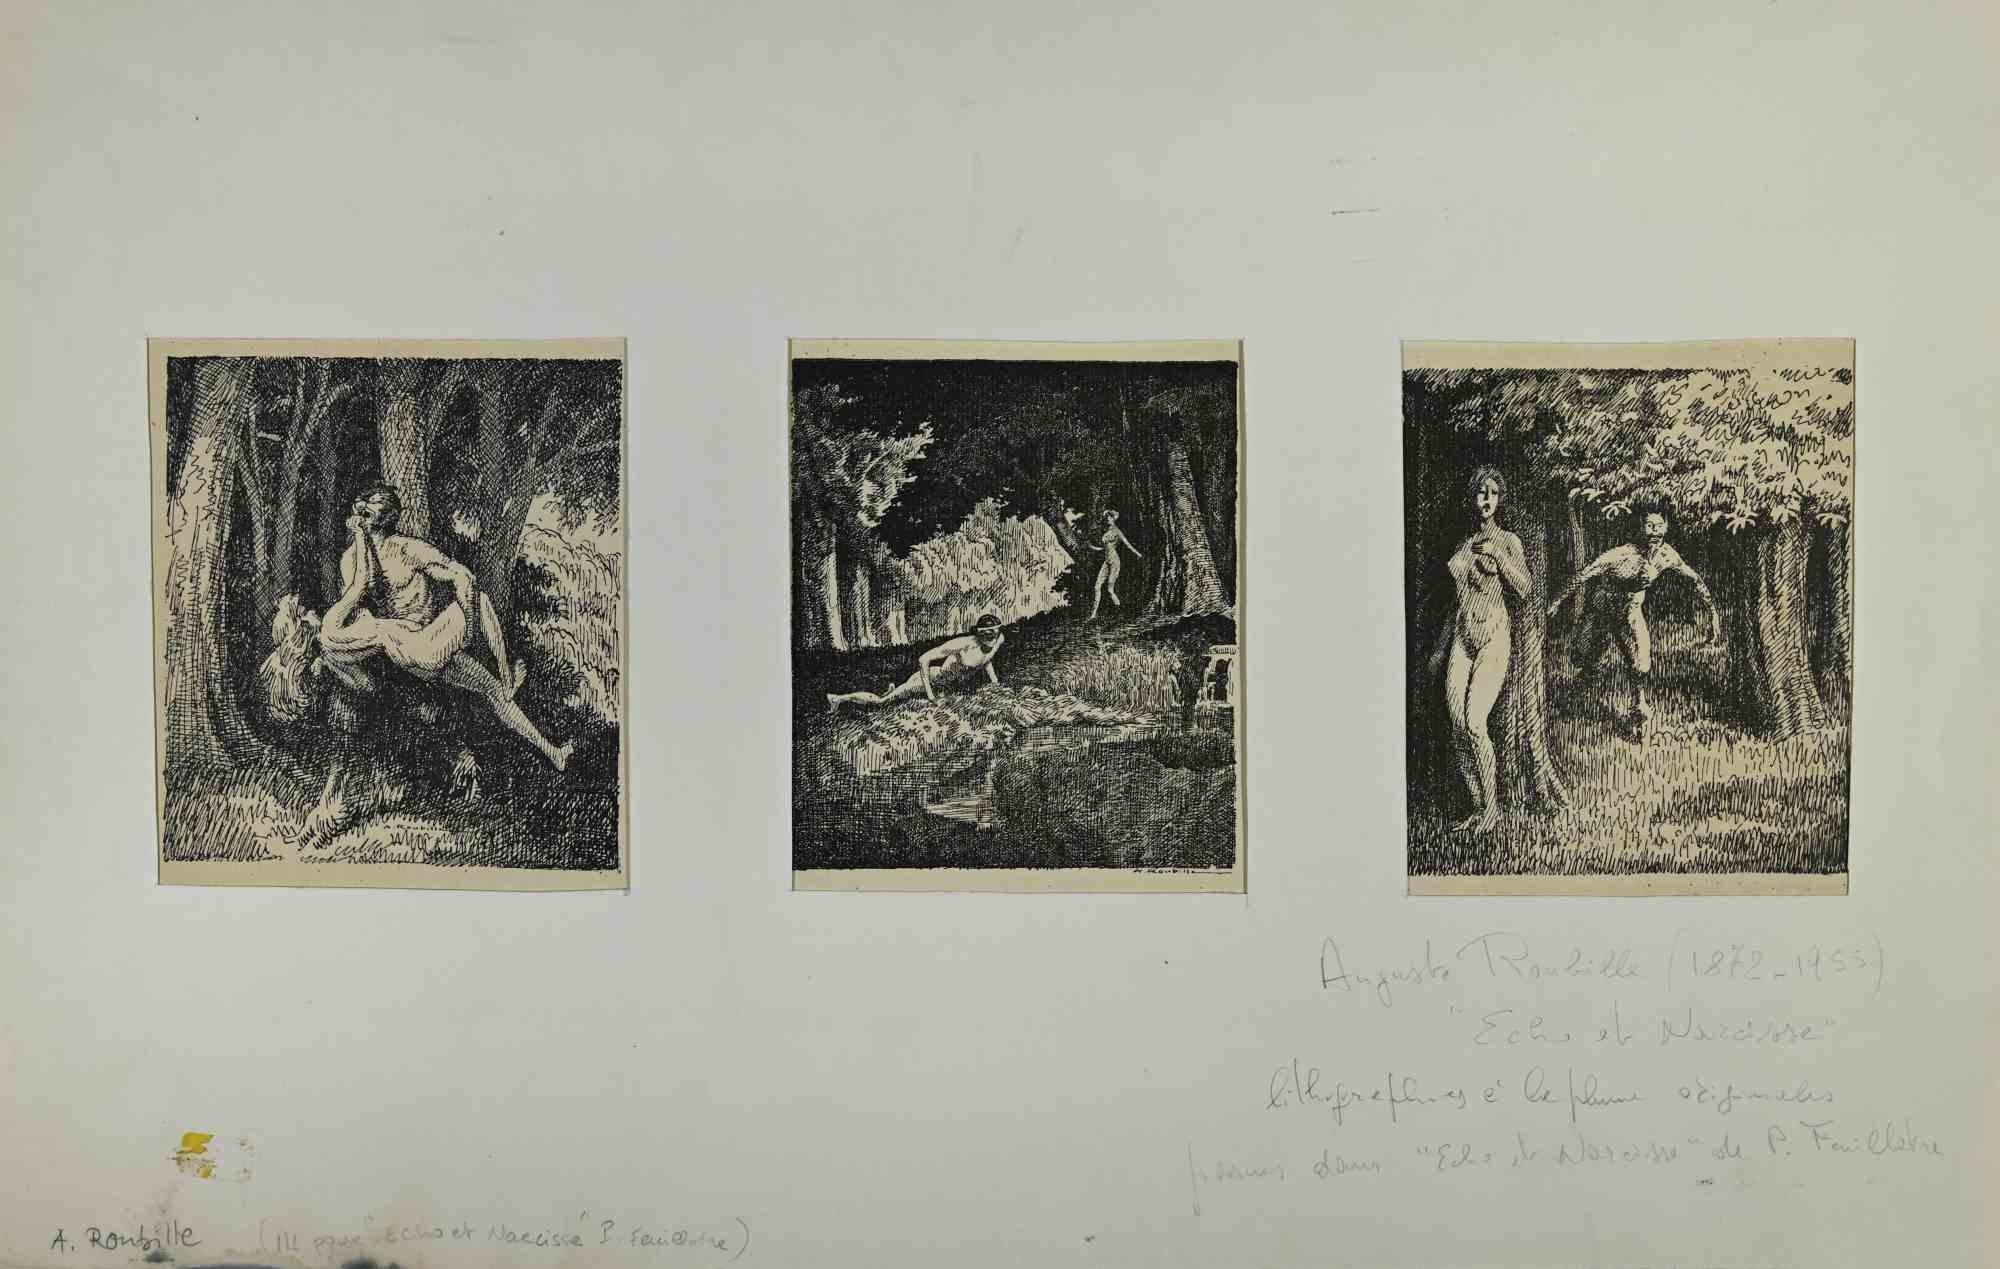 Echo et Narcisse ist ein Kunstwerk des französischen Künstlers Auguste Roubille (1872-1955) aus dem Jahr 1911.

Drei Lithographien Druck auf Papier, cm 20x15 cad. In der Platte signiert. Das Kunstwerk ist Teil des Poem of Paul Feuillâtre.

Das Werk